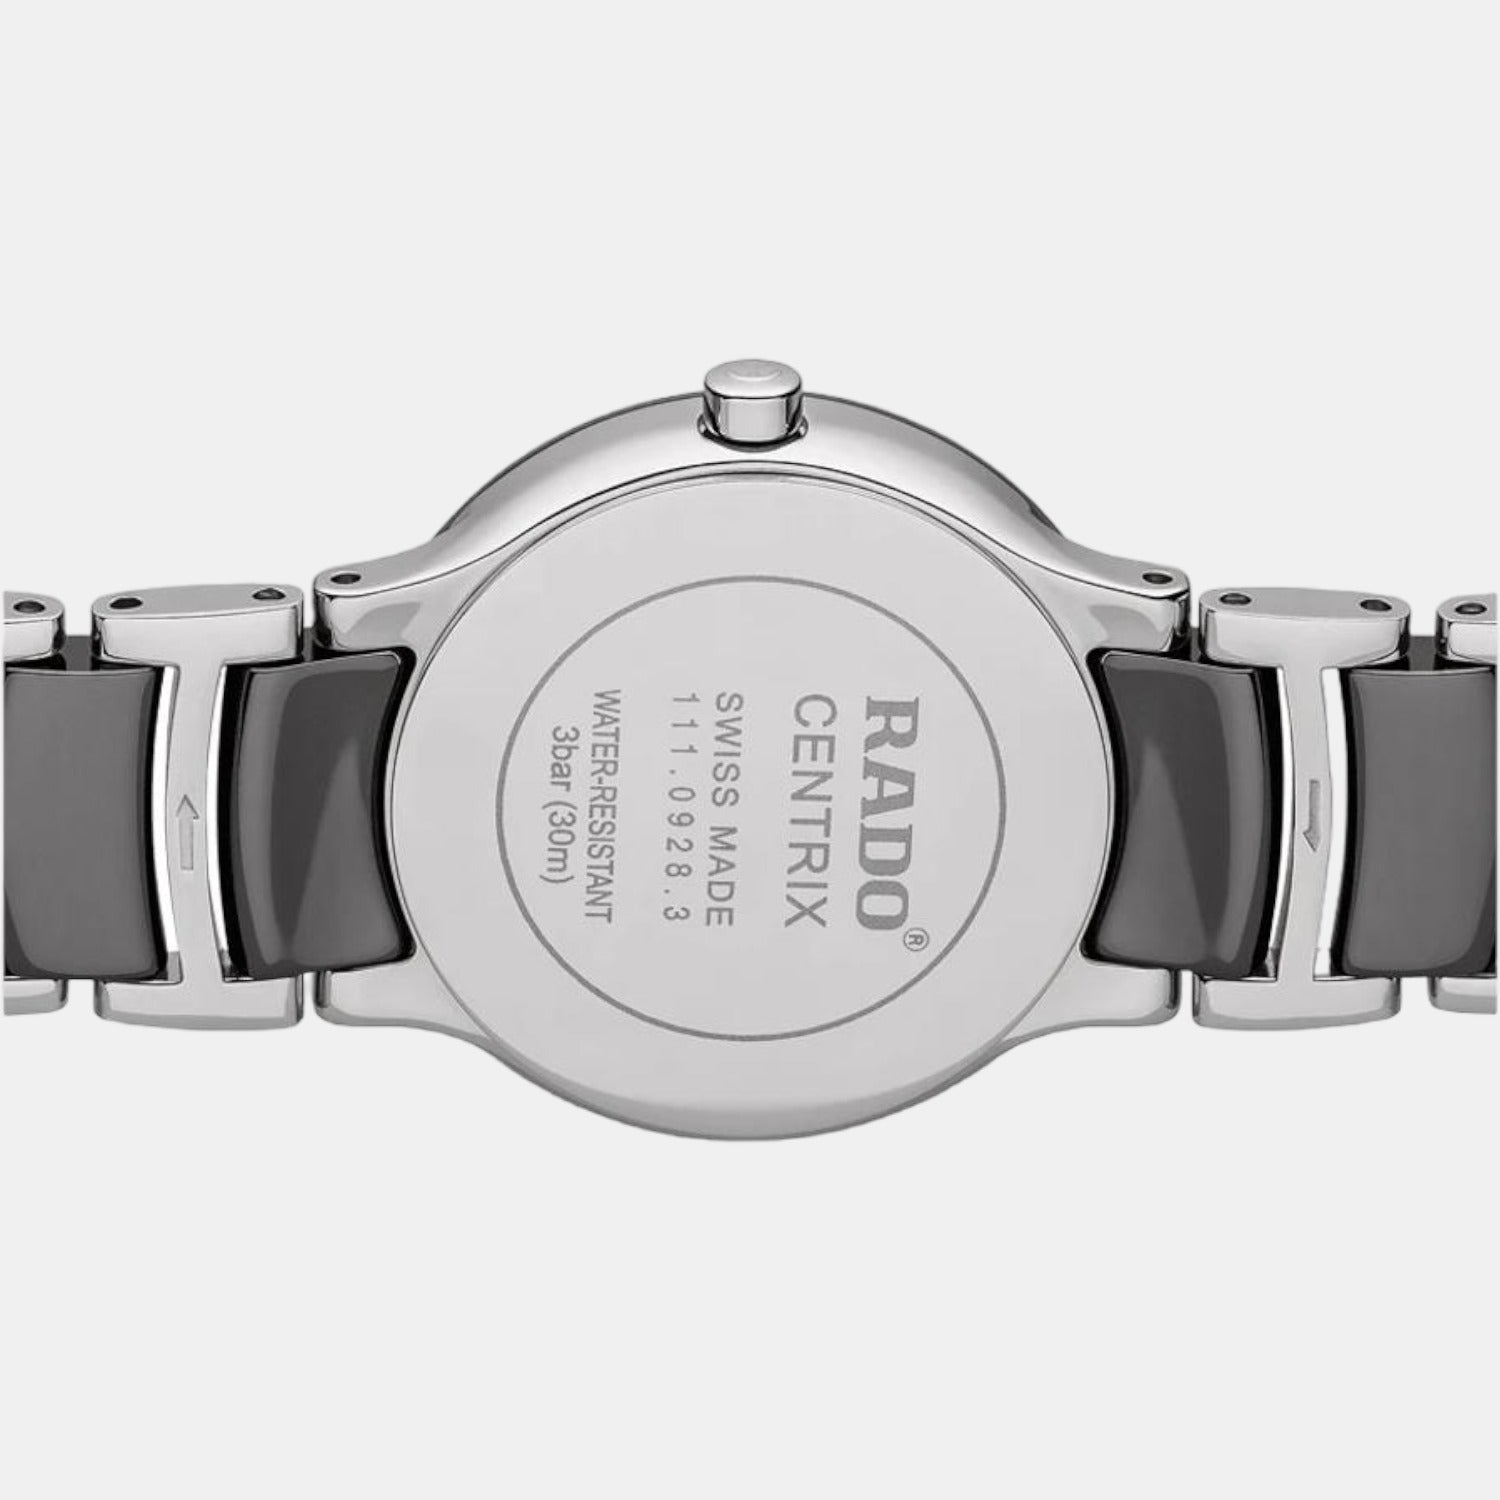 rado-stainless-steel-black-analog-men-watch-r30928132